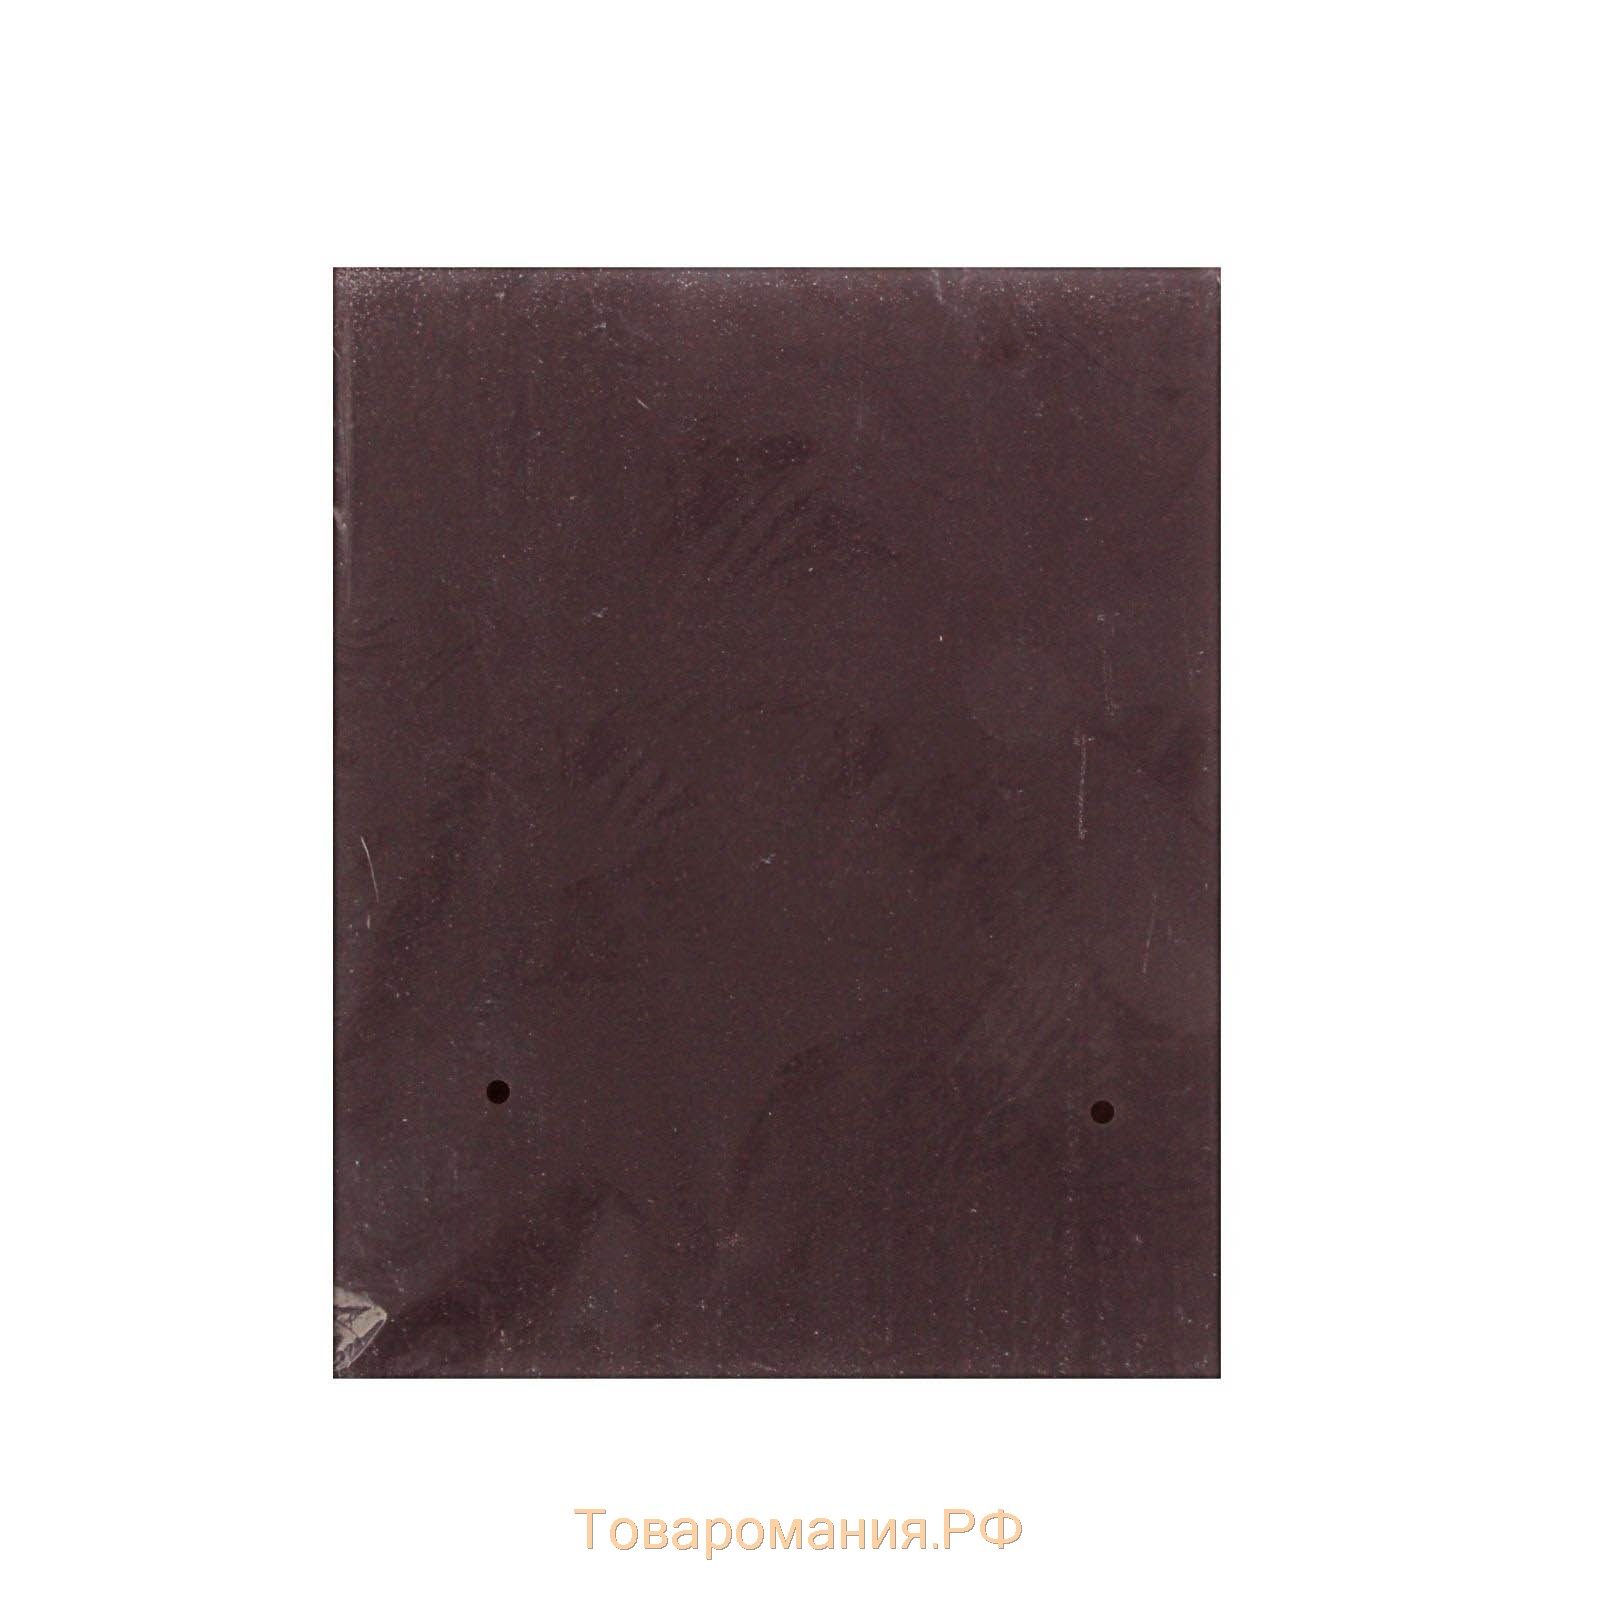 Шкурка шлифовальная в листах ТУНДРА, на тканевой основе водостойкая, 230 х 280, Р80, 10 шт.